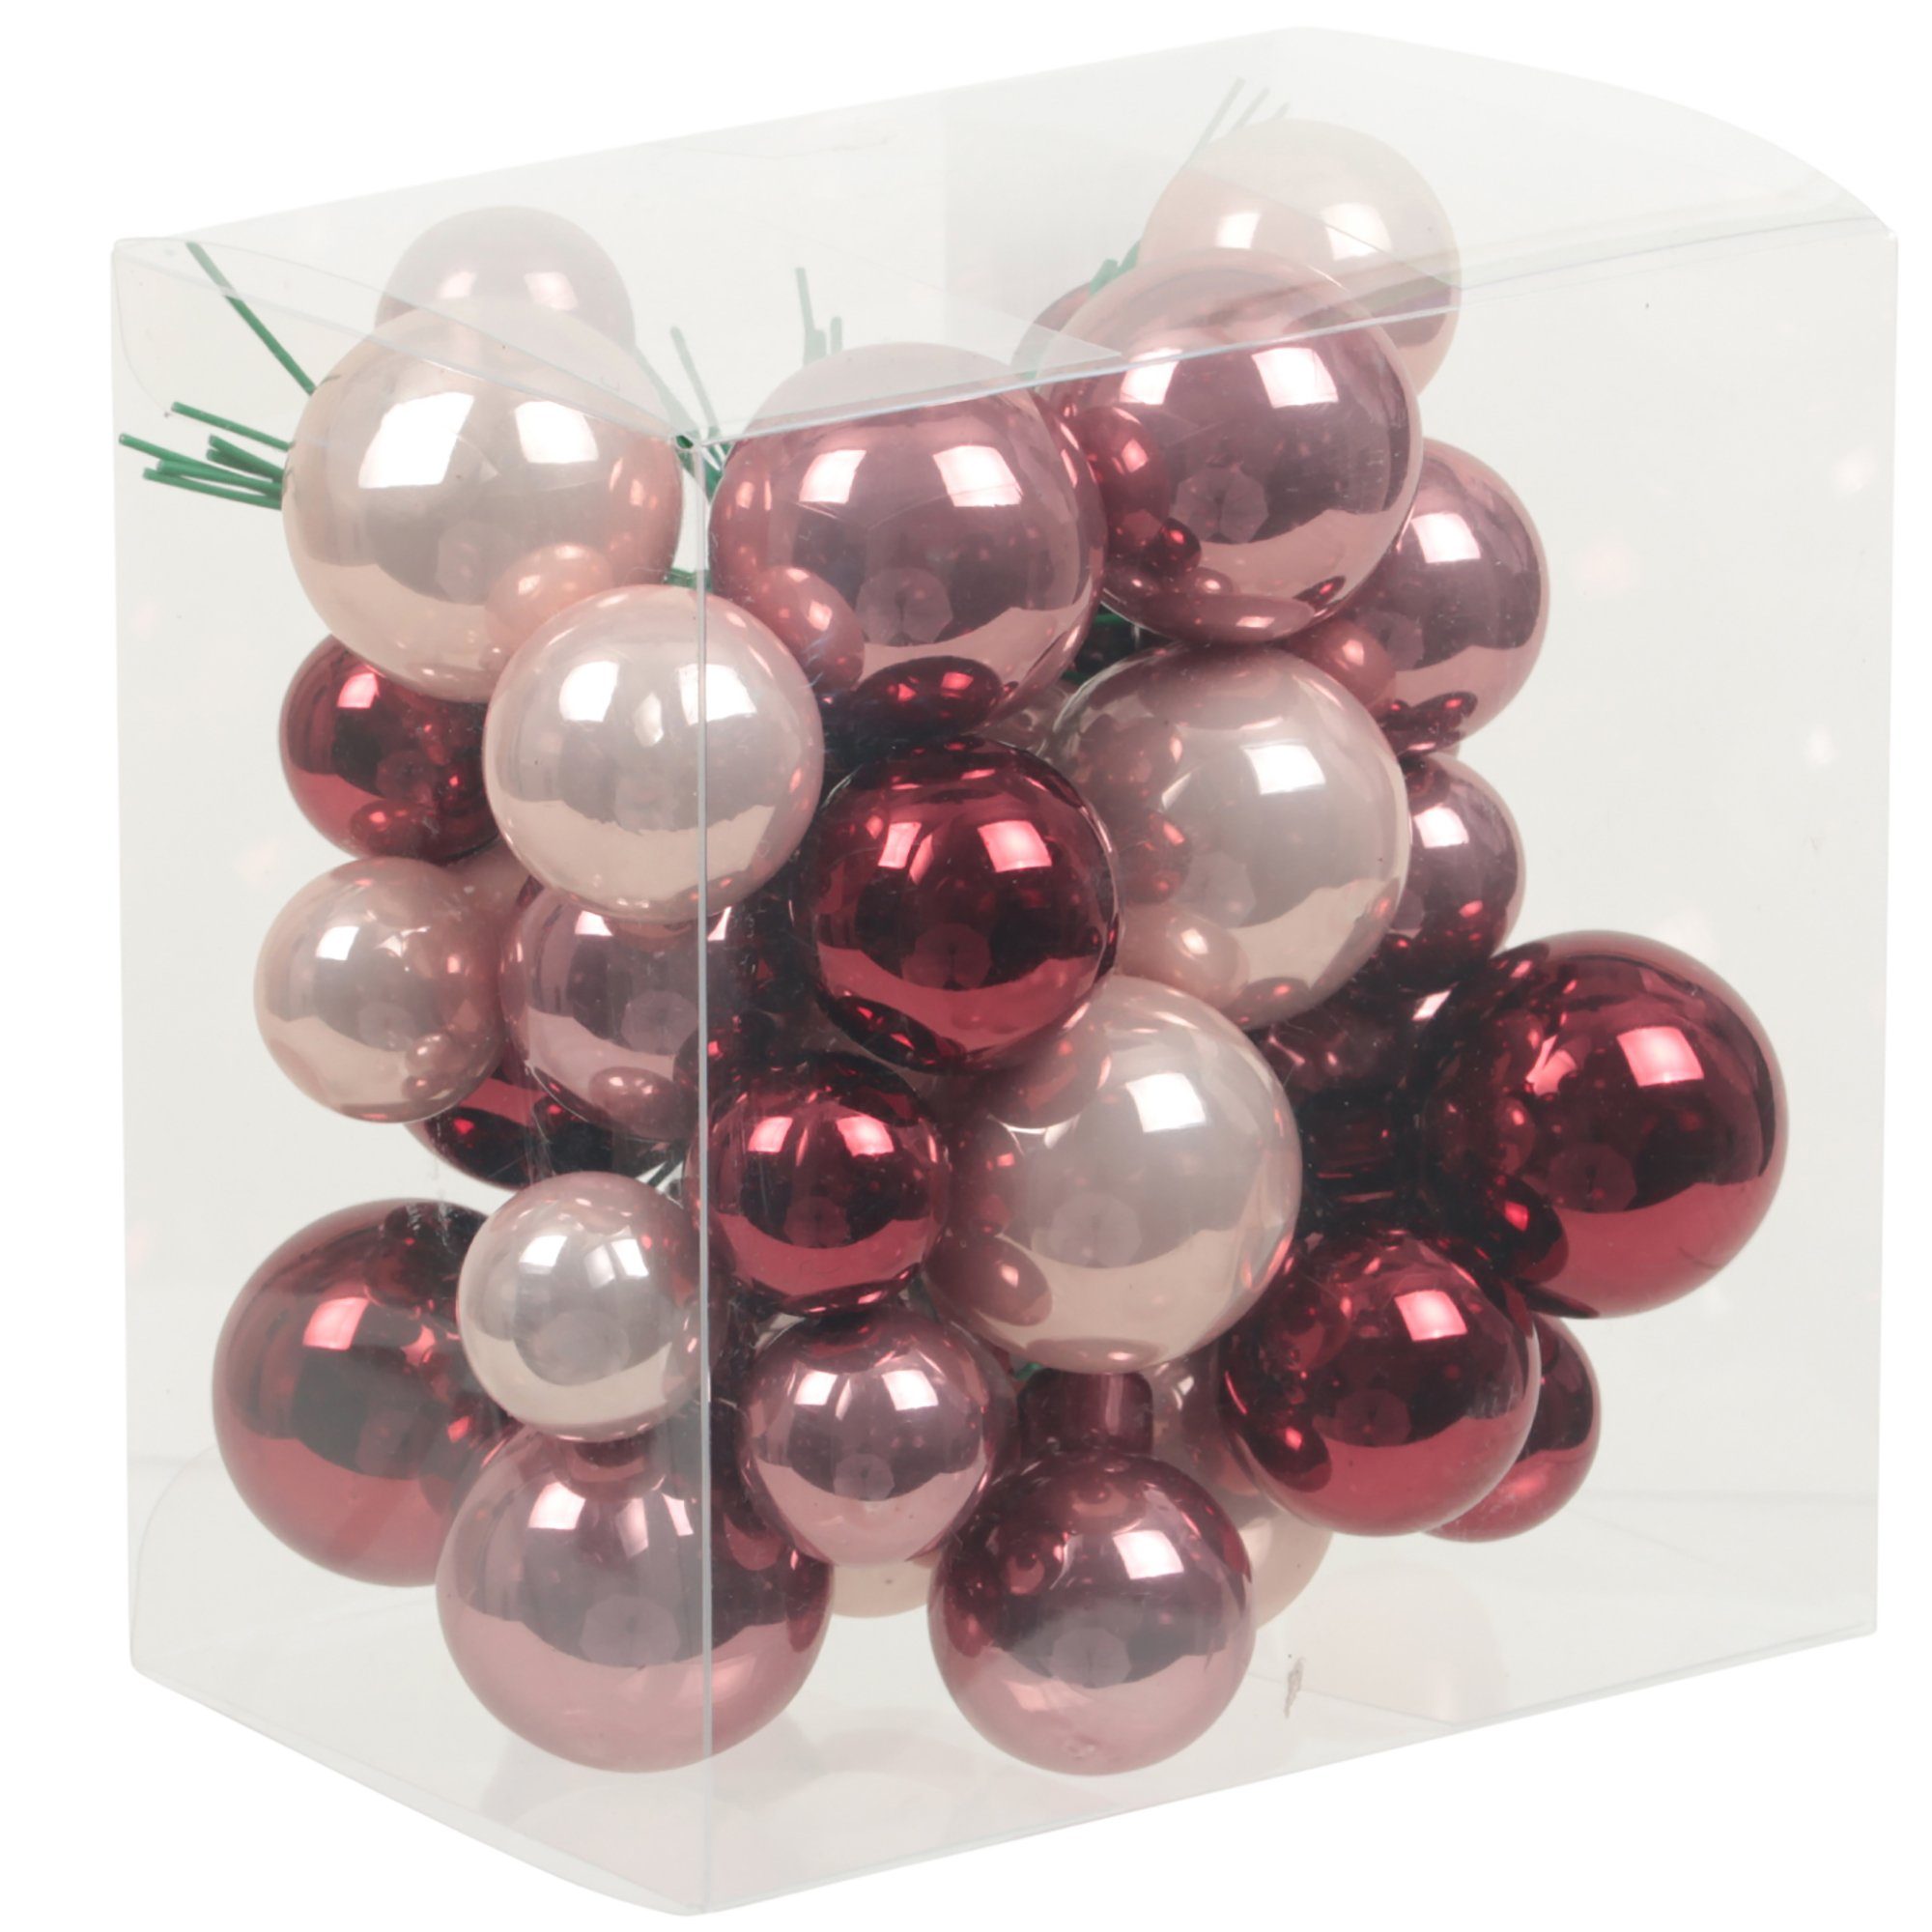 Annastore Weihnachtsbaumkugel 115629 - Bündel aus Glaskugeln an Draht - Spiegelbeeren, Weihnachtsdeko, Baumkugeln an Draht